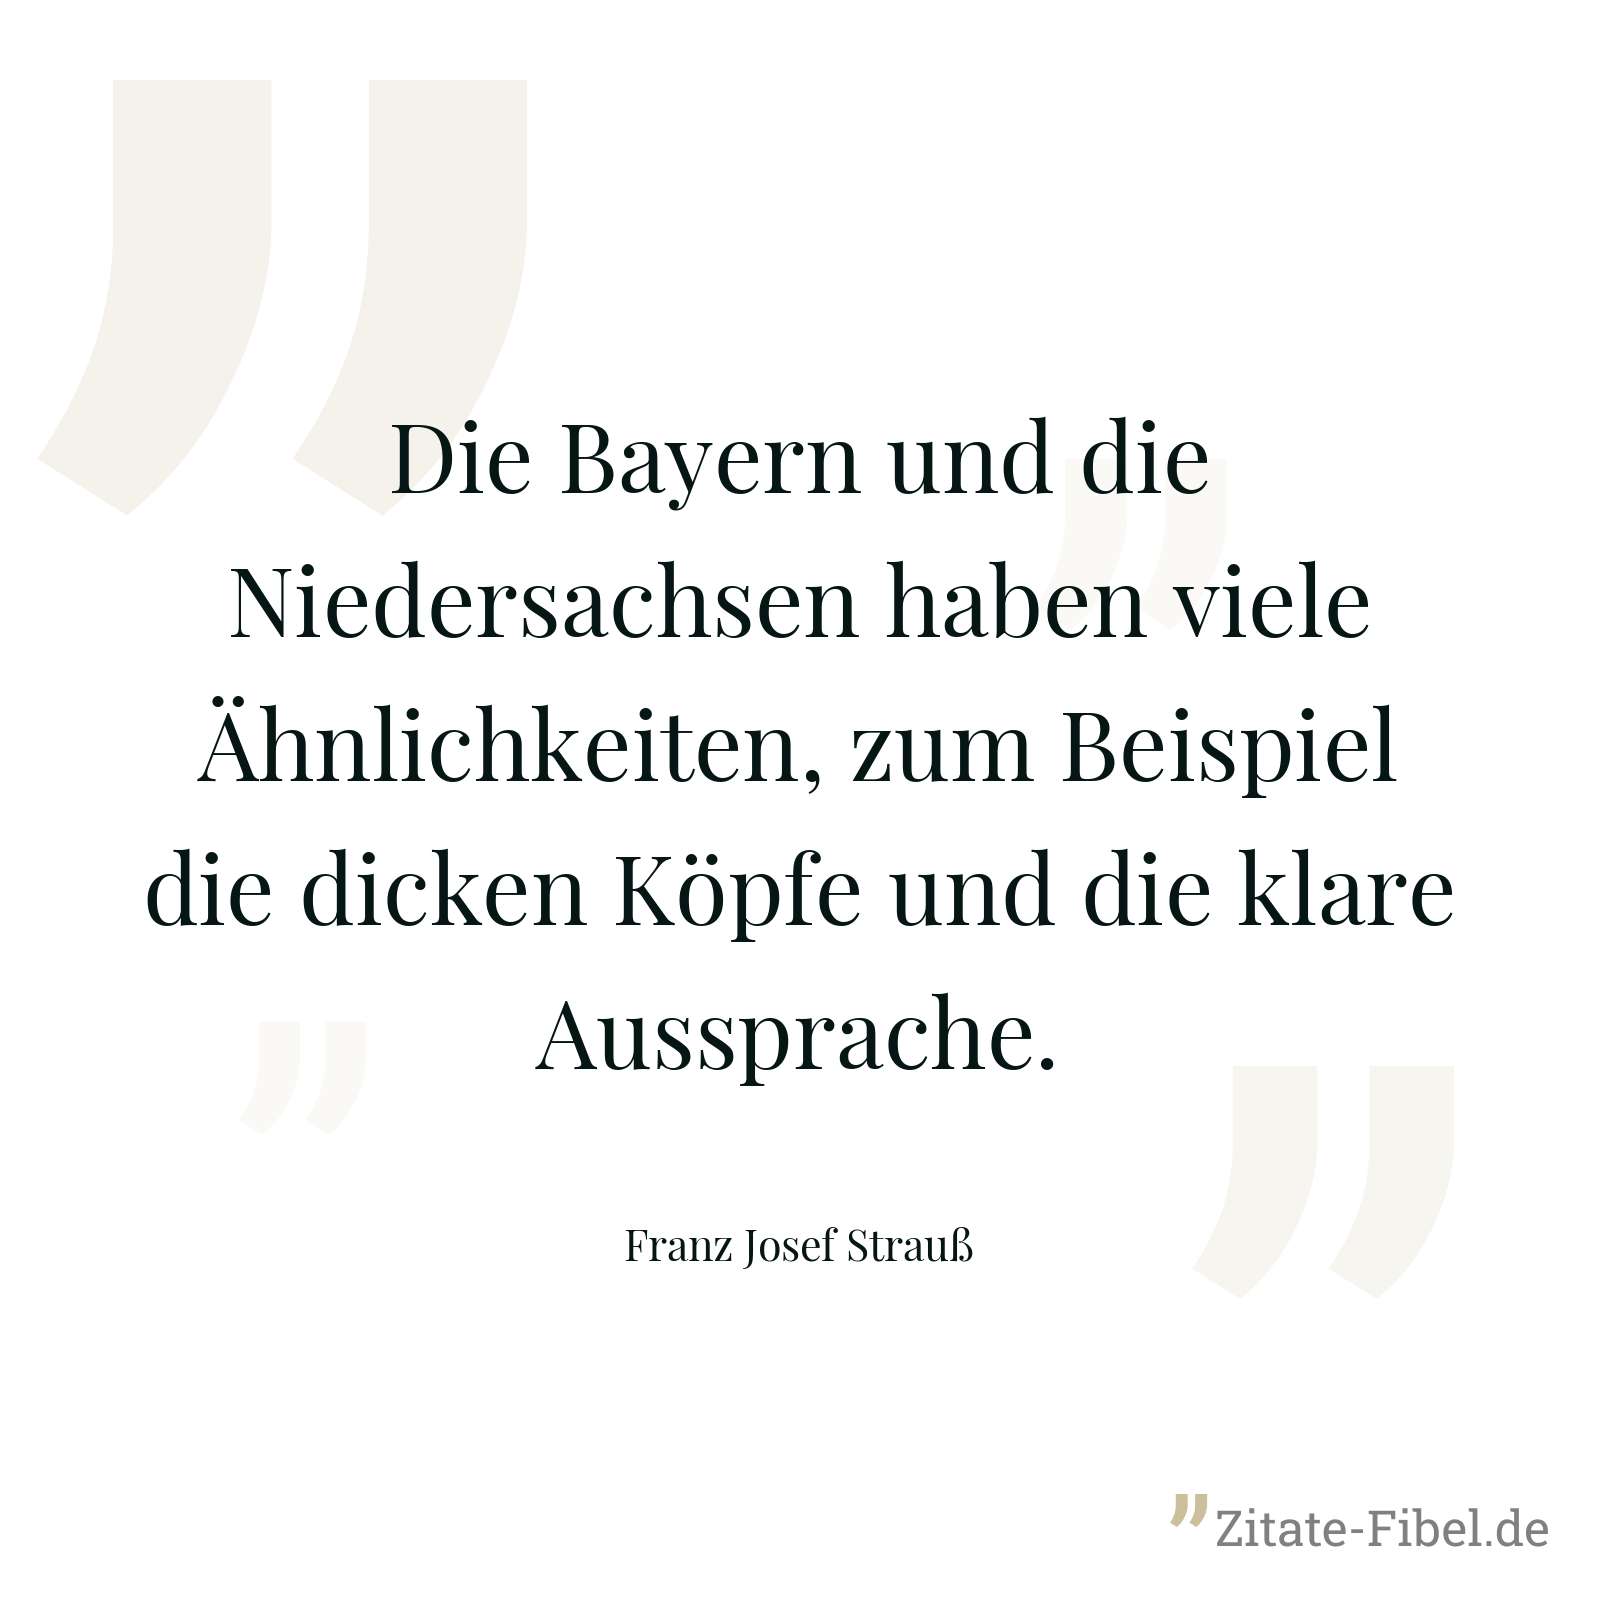 Die Bayern und die Niedersachsen haben viele Ähnlichkeiten, zum Beispiel die dicken Köpfe und die klare Aussprache. - Franz Josef Strauß